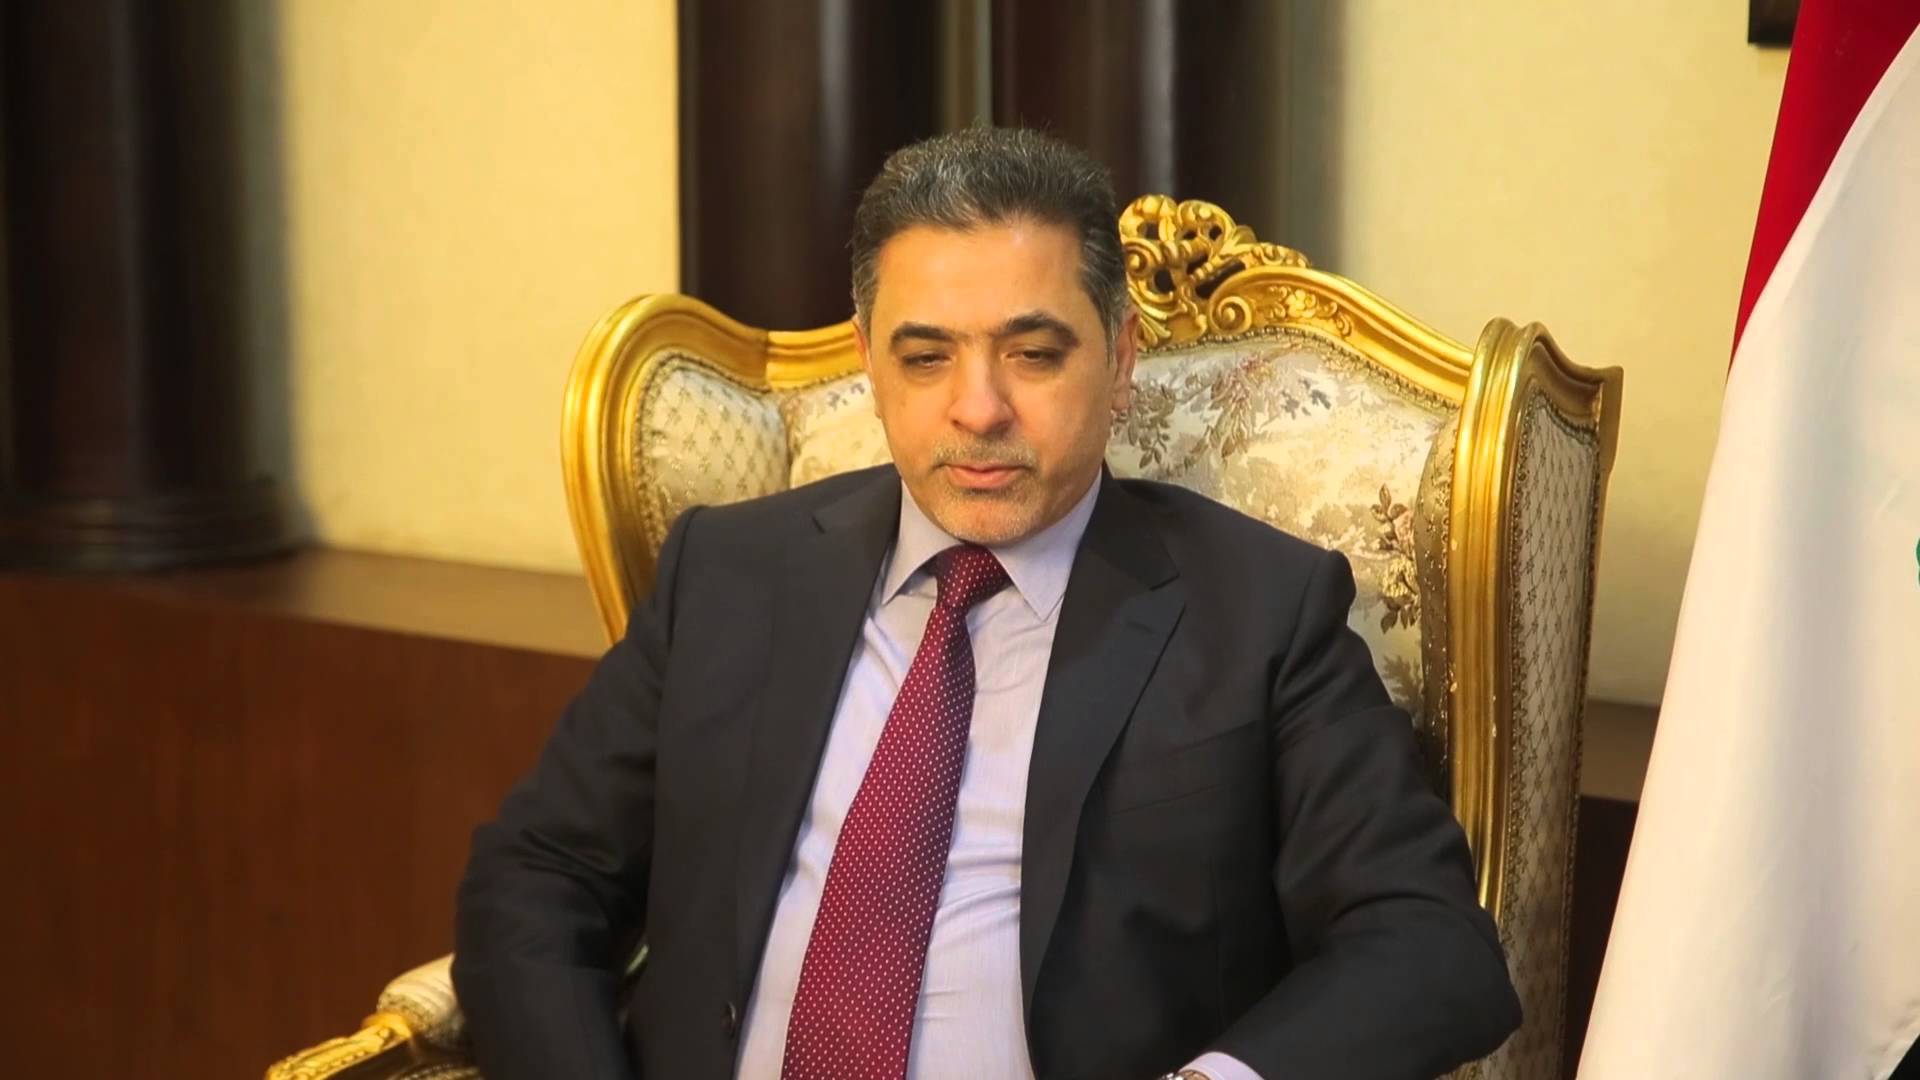 وزير الداخلية المستقيل يتهم العبادي بـ”تحريف الحقائق” بشأن تفجير الكرادة”